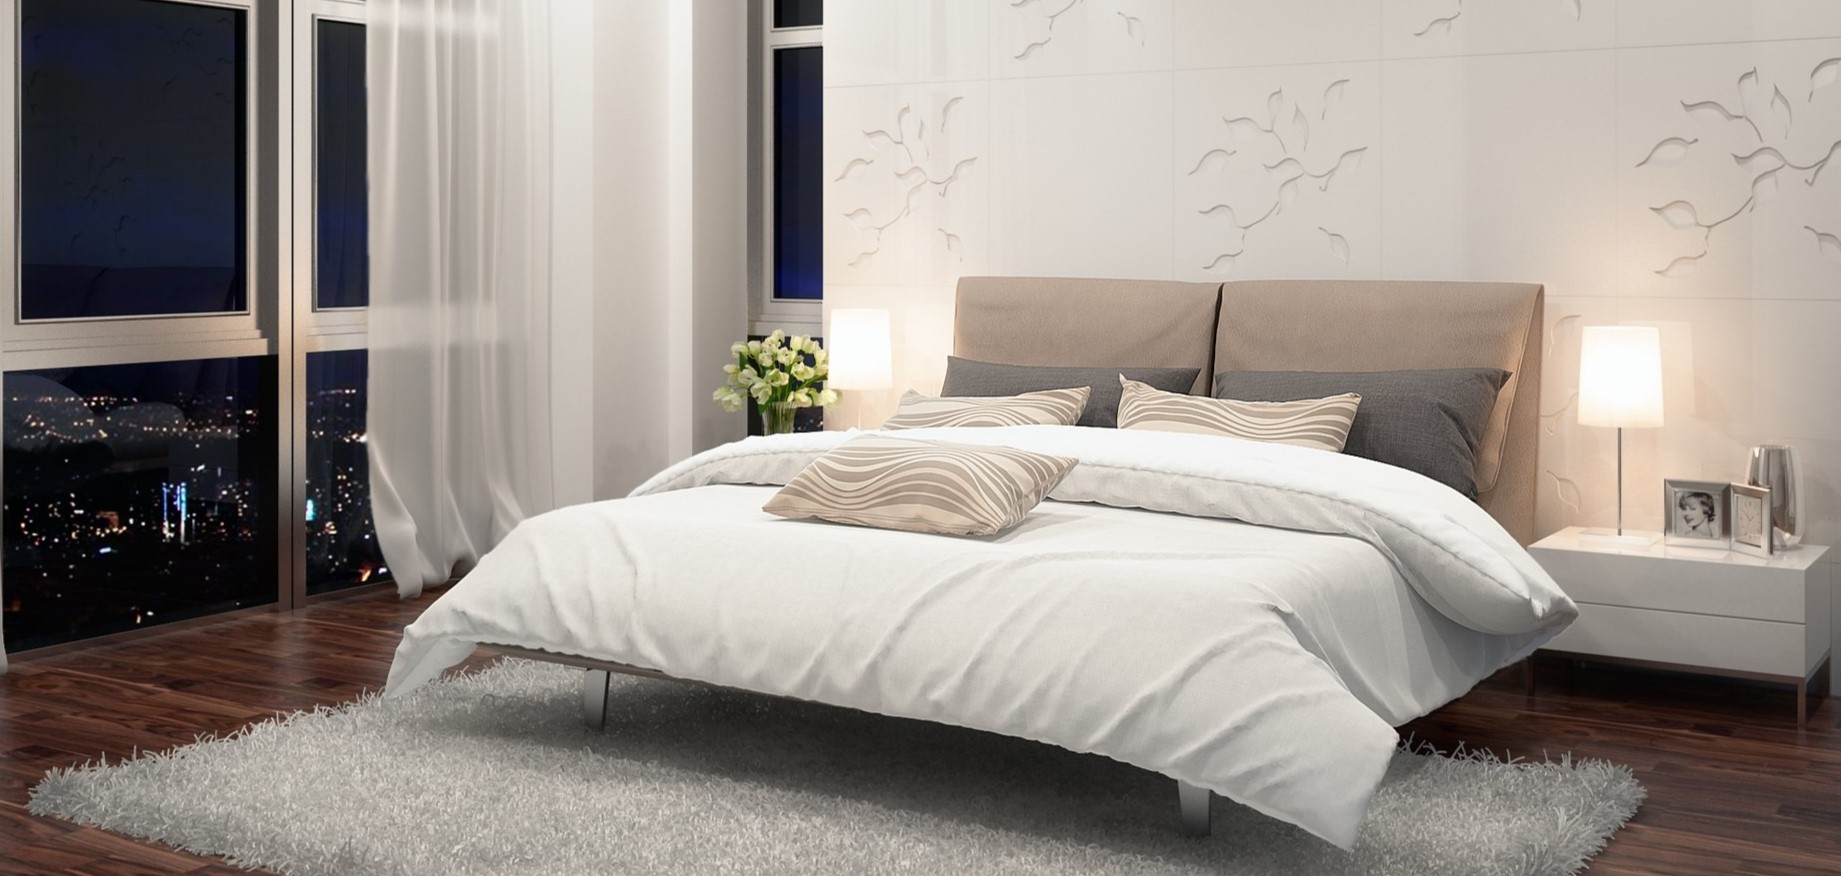 Возле кровати можно постелить стильный ковер для создания уютной атмосферы в спальне